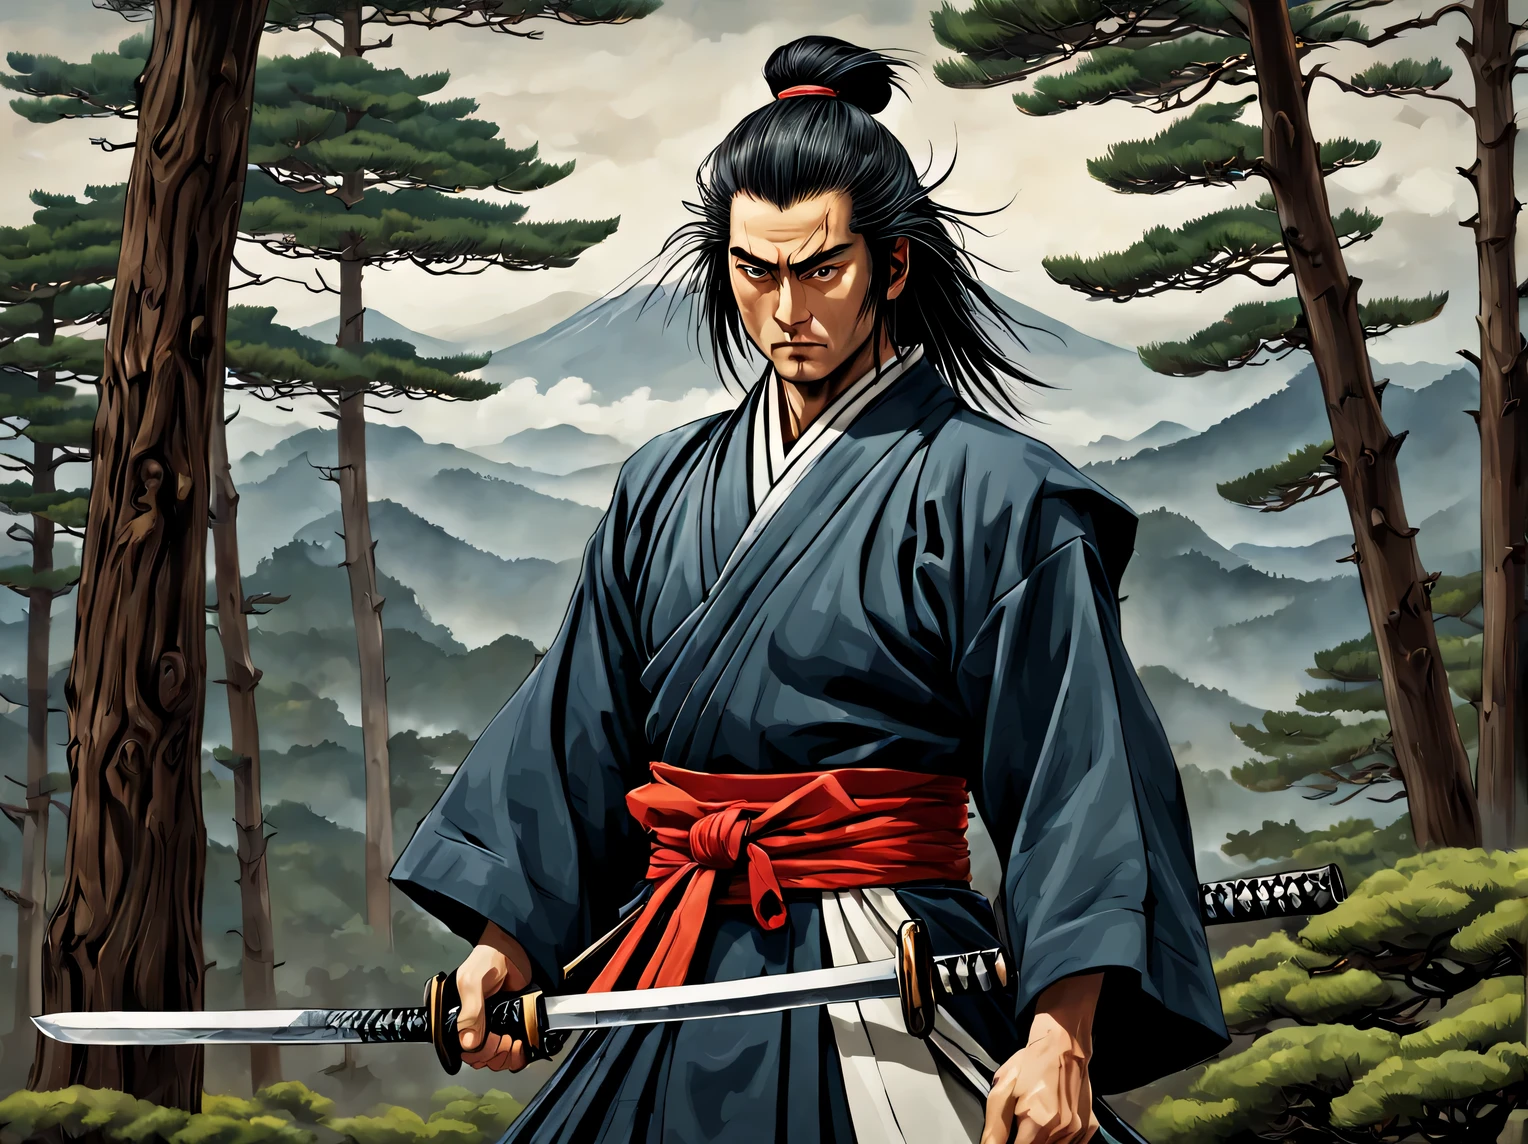 A rede neural faz um desenho tendo como pano de fundo os pinheiros Fuji e japoneses, criatura heróica - samurai orgulhoso, segurando uma espada katana de samurai, roupas de samurai, físico magro e magro, músculos desenvolvidos, cabelo solto, Alto detalhe, clareza 32 mil., Uma alta resolução, profundidade de cor -bit, (Mark Rayden: 1.1155), (Xue Wang: 1.1155), (Do it:1.255), muitos detalhes, Imagem bonita